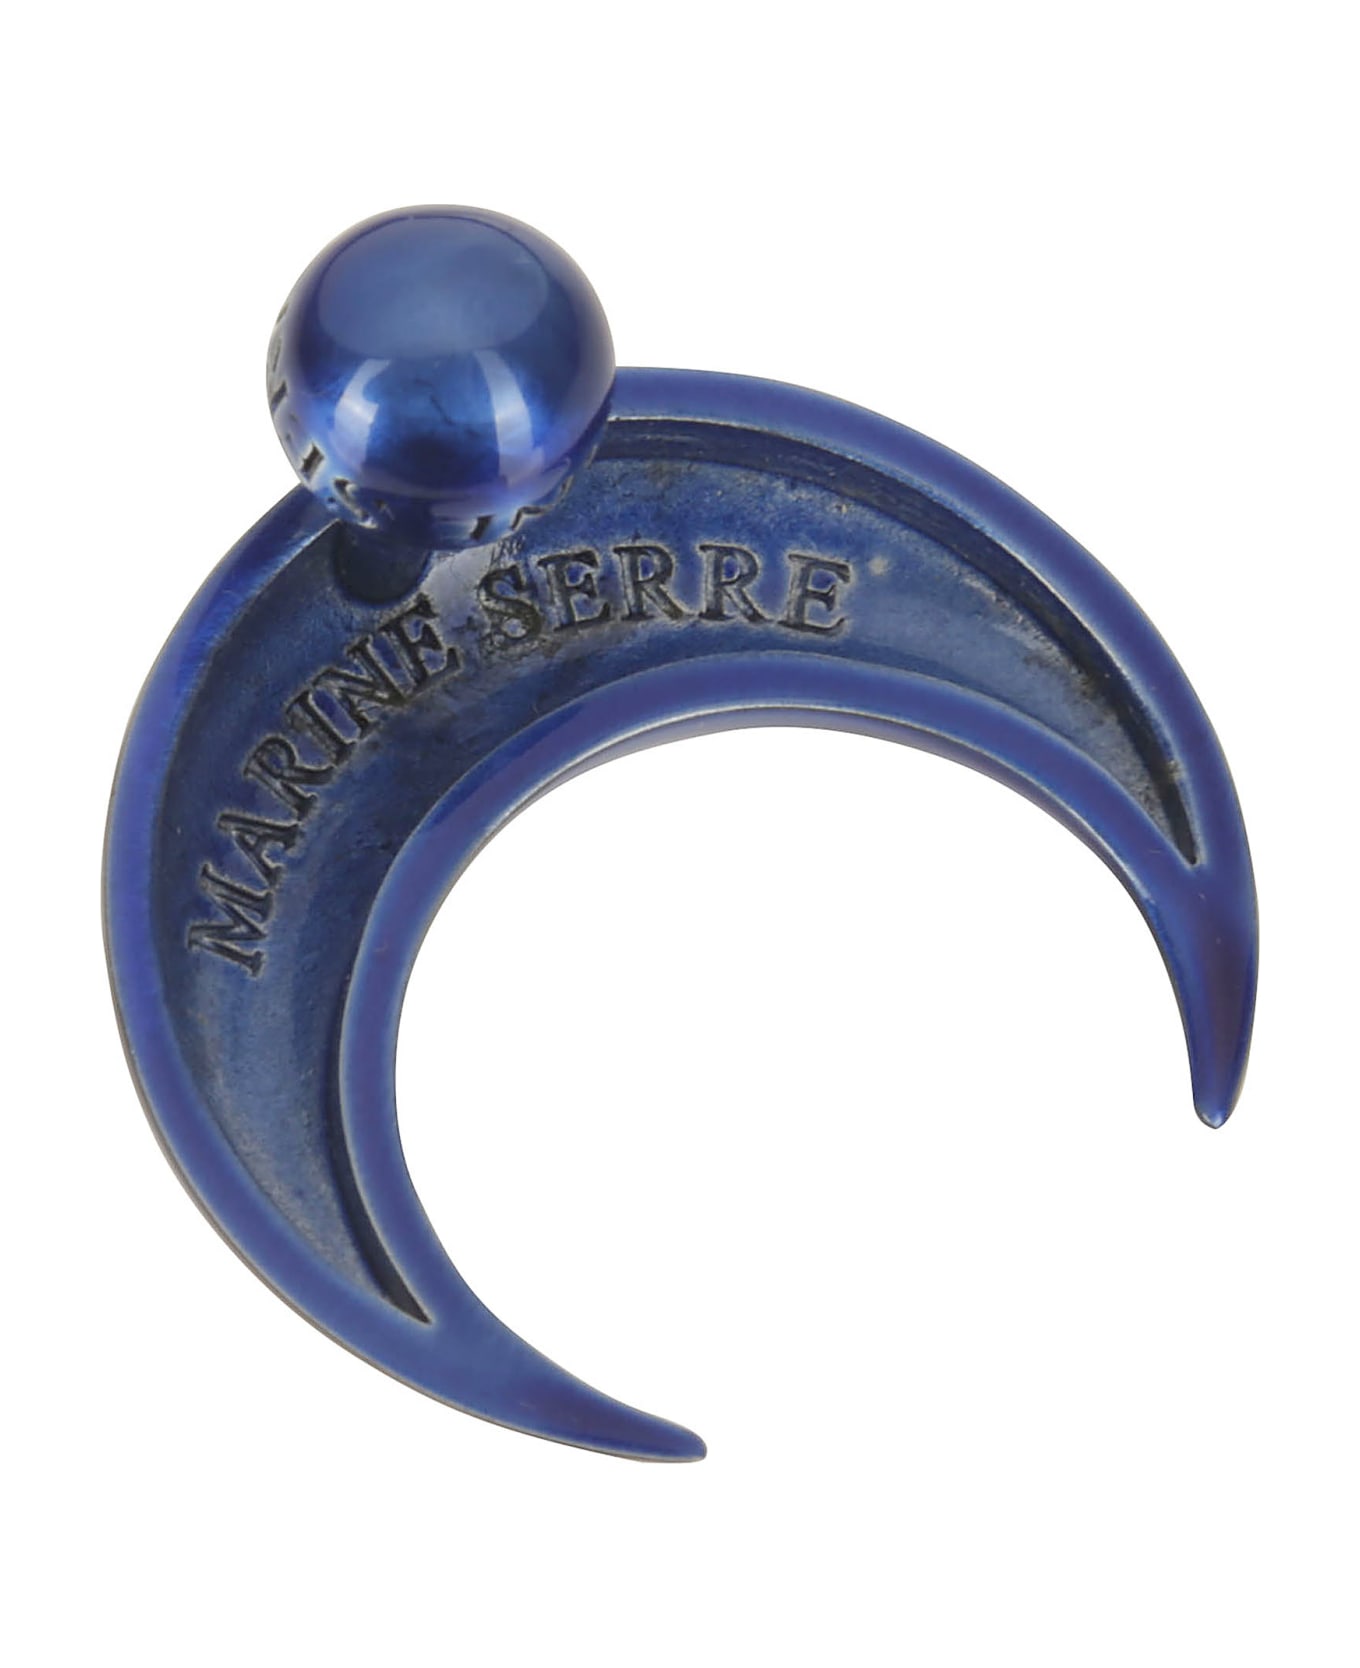 Marine Serre Regenerated Single Tin Moon Stud Earrings - AZUR